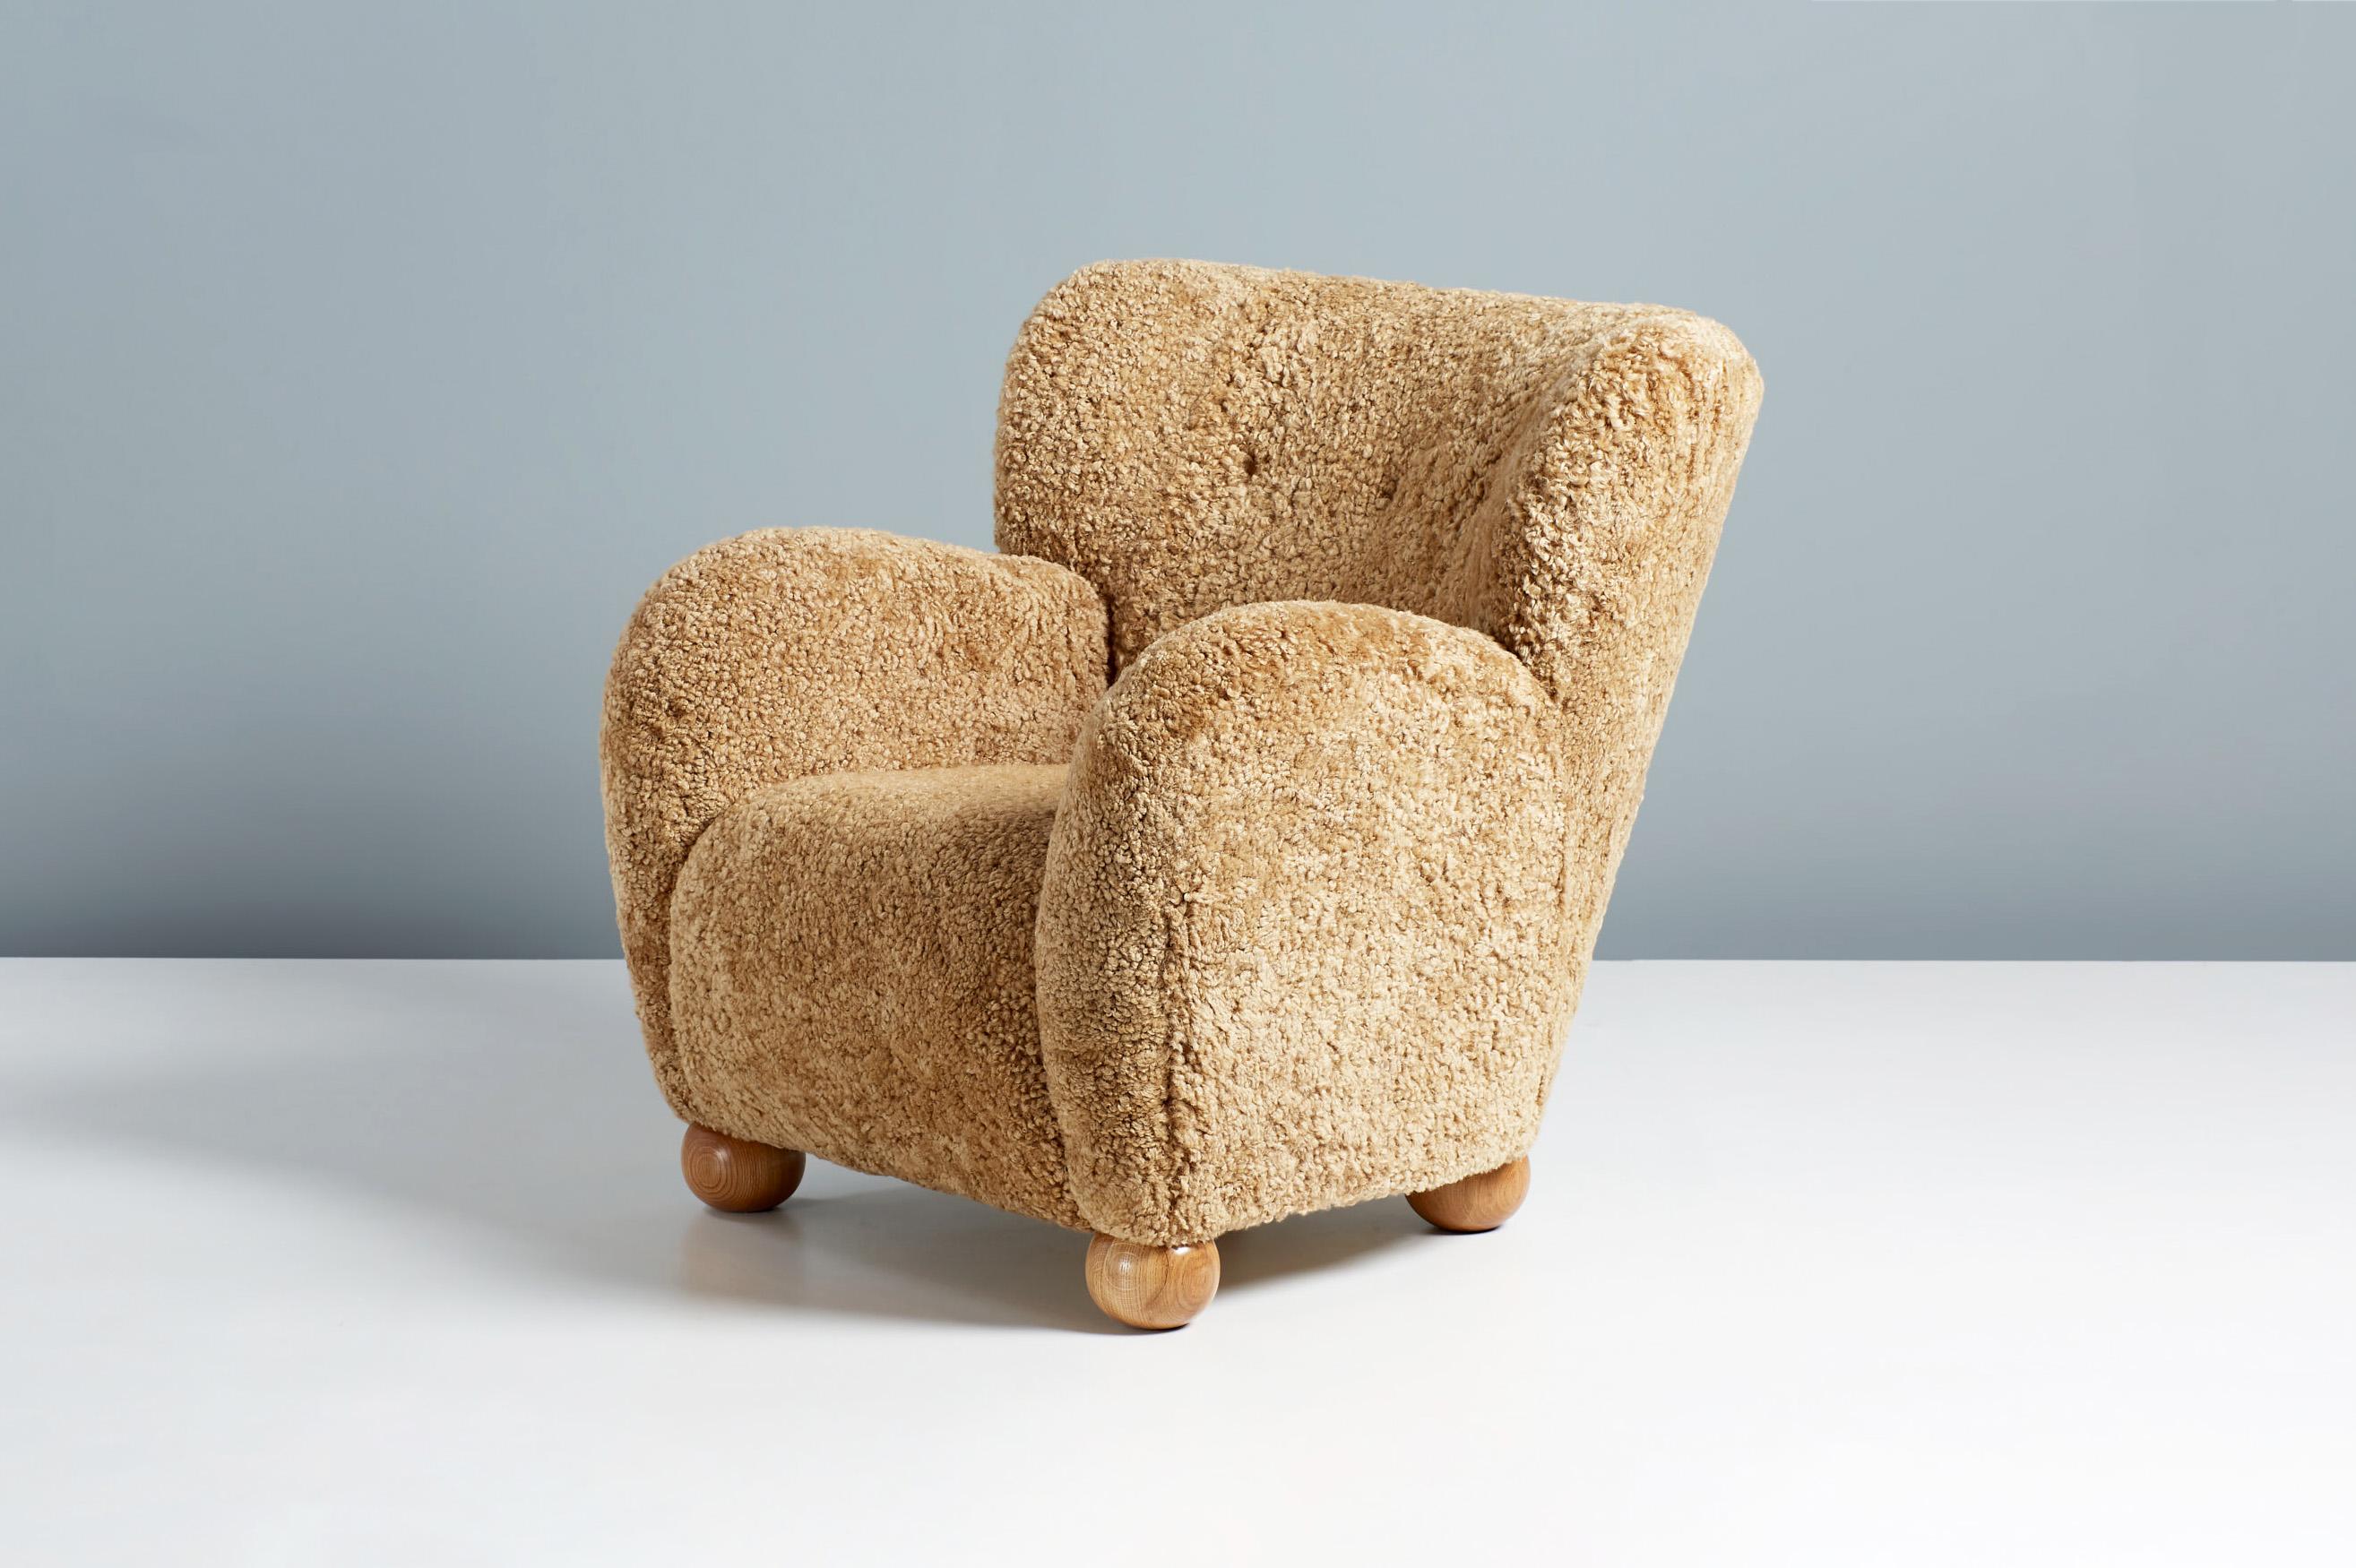 Dagmar design - Sessel Karu

Ein maßgefertigter Loungesessel, der in unseren Werkstätten in London unter Verwendung hochwertigster Materialien entwickelt und hergestellt wird. Dieses Exemplar ist mit 'Maple' Shearling gepolstert und hat geölte